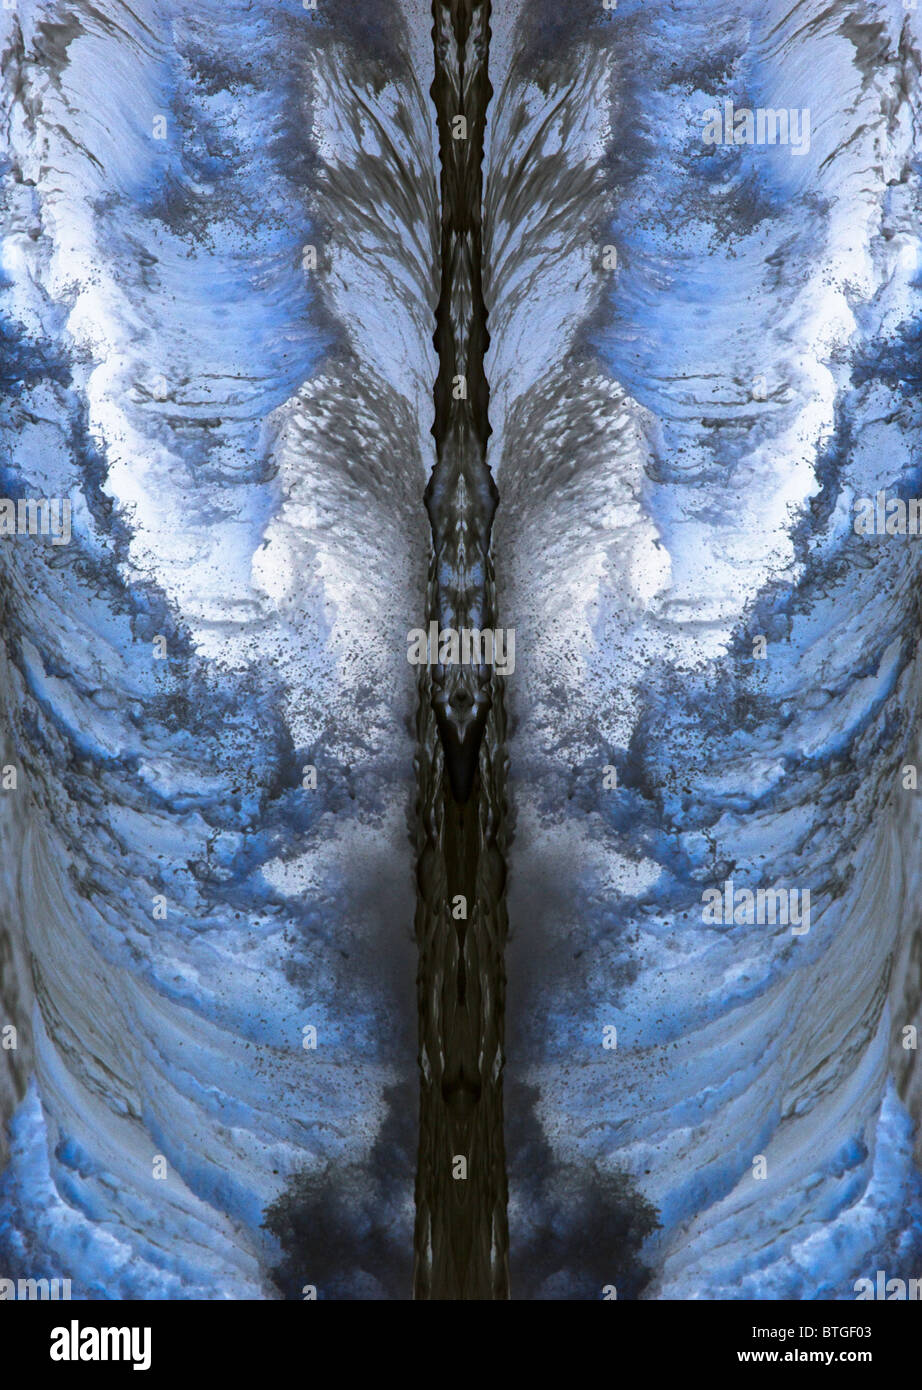 Las olas que rompen en la orilla, reflejado, rotado y coloreado artificialmente para dar un efecto abstracto Foto de stock